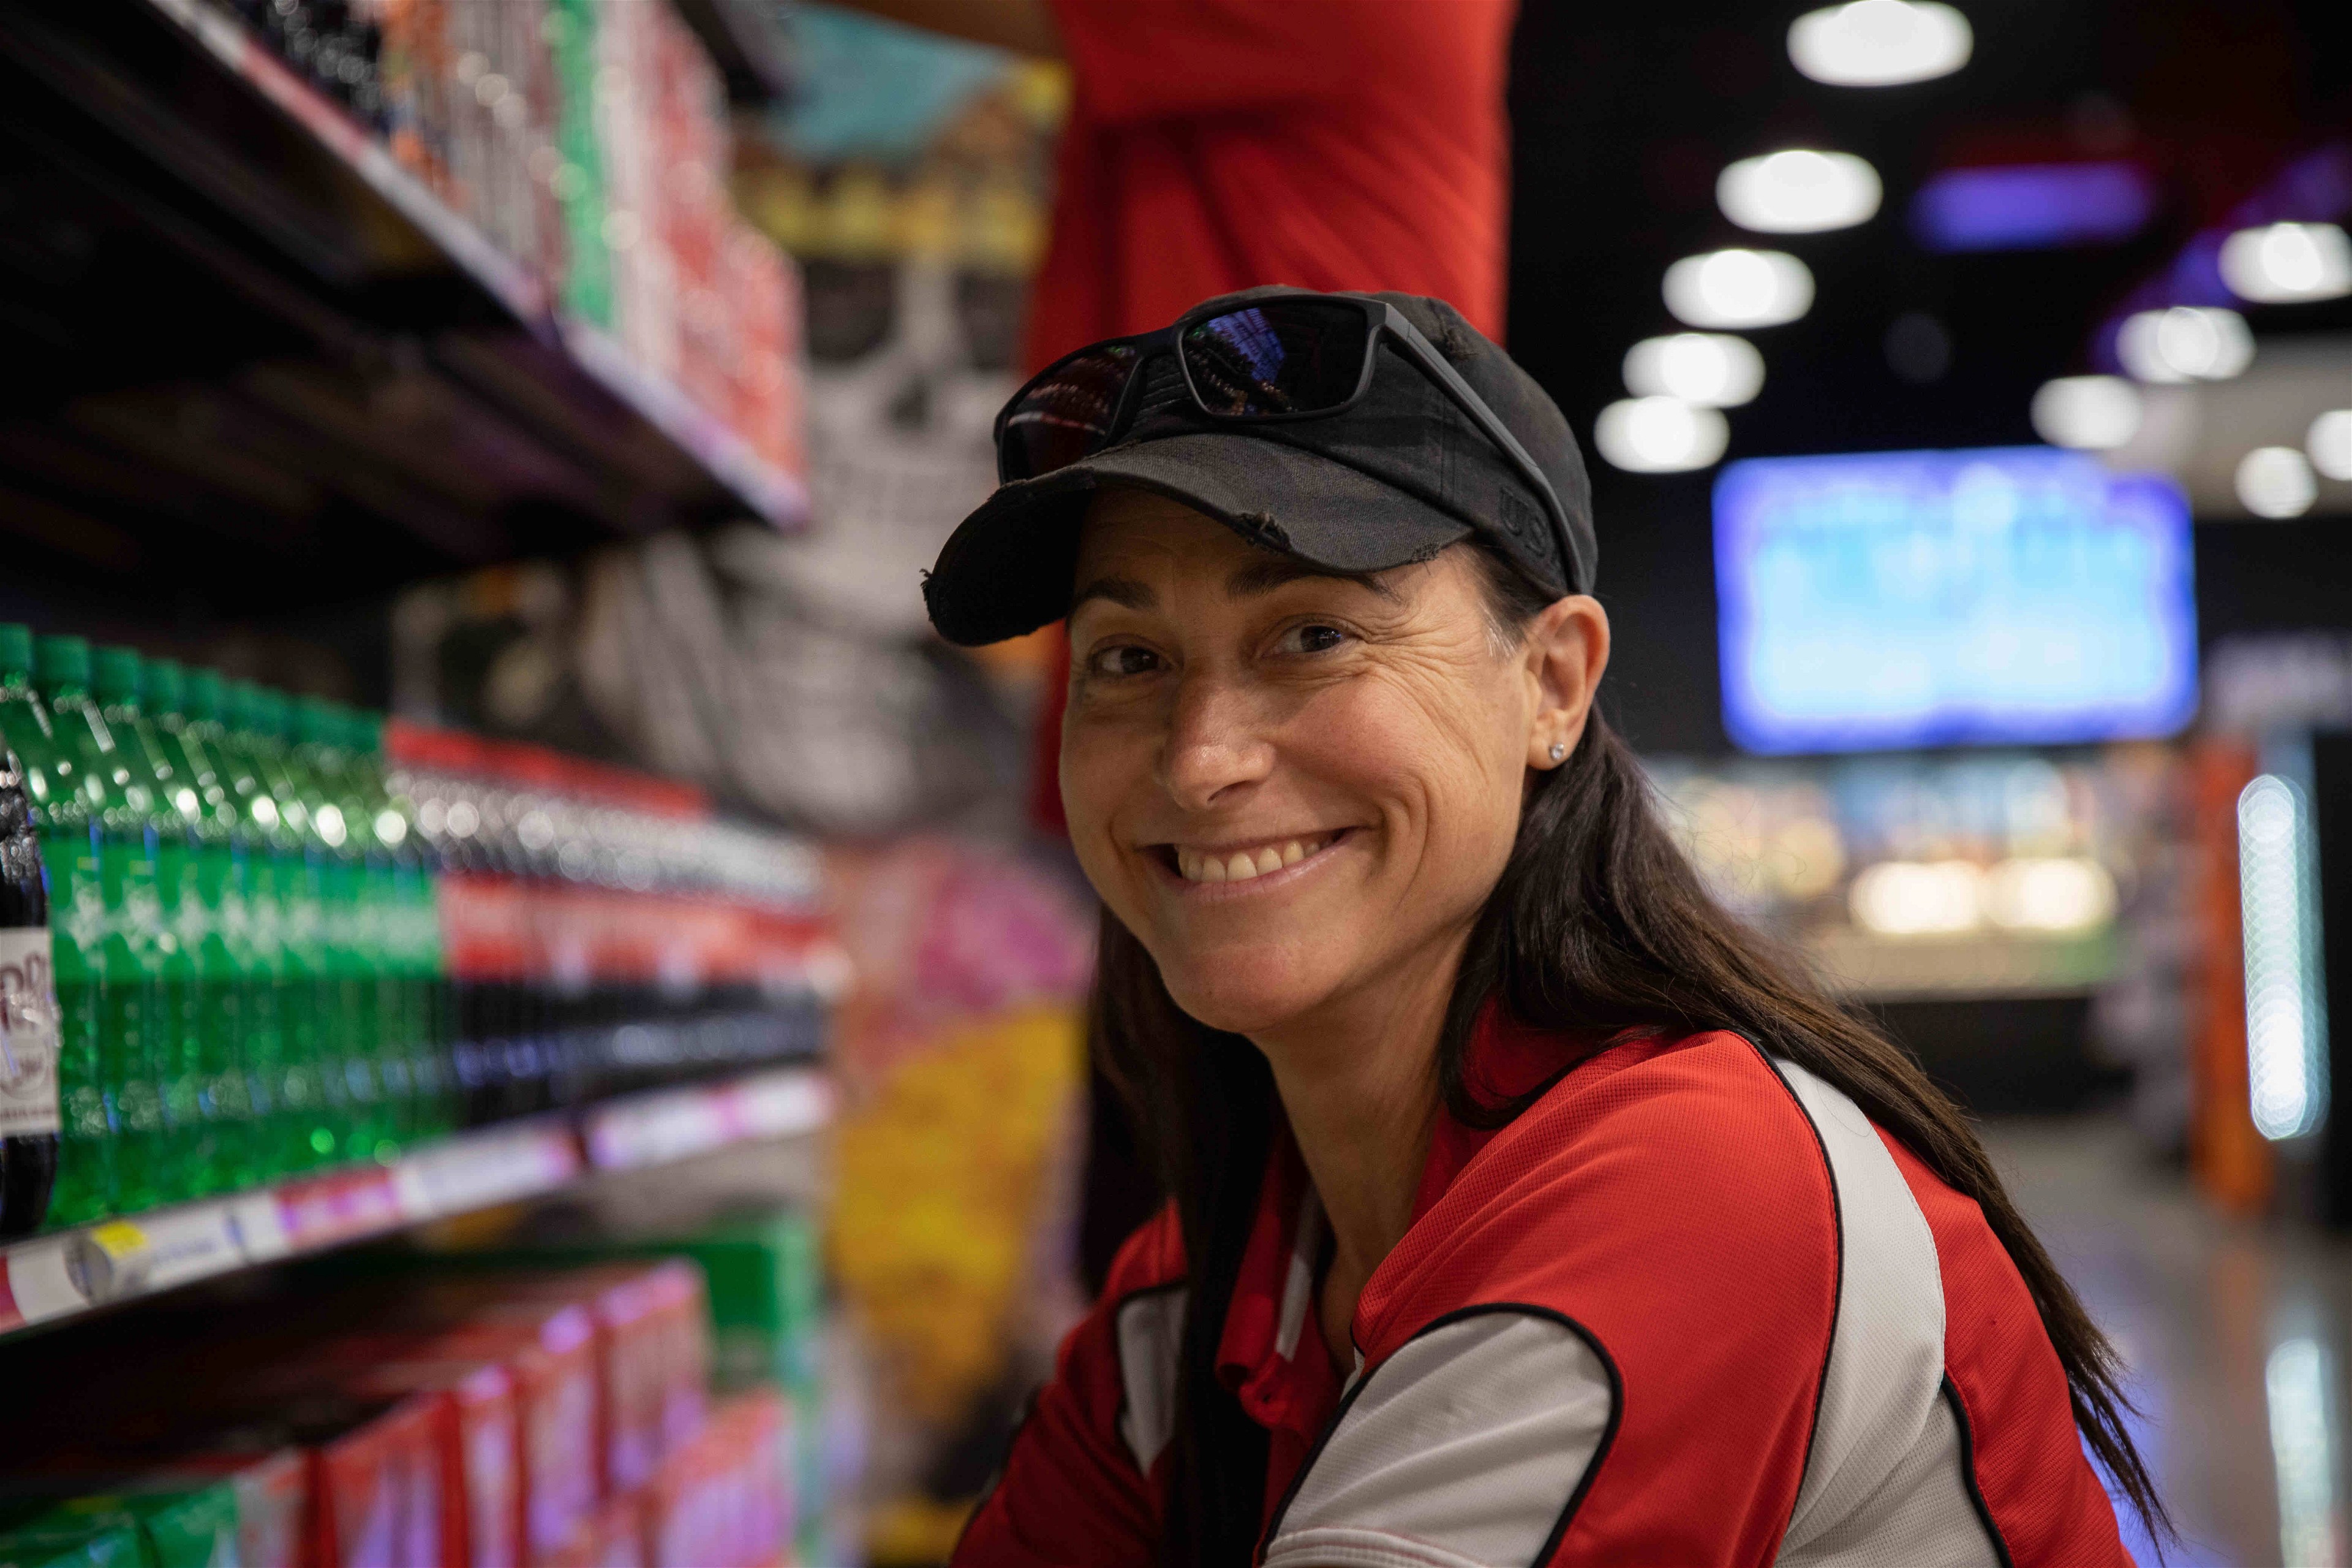 Smiling girl next to the Coca-Cola shelf